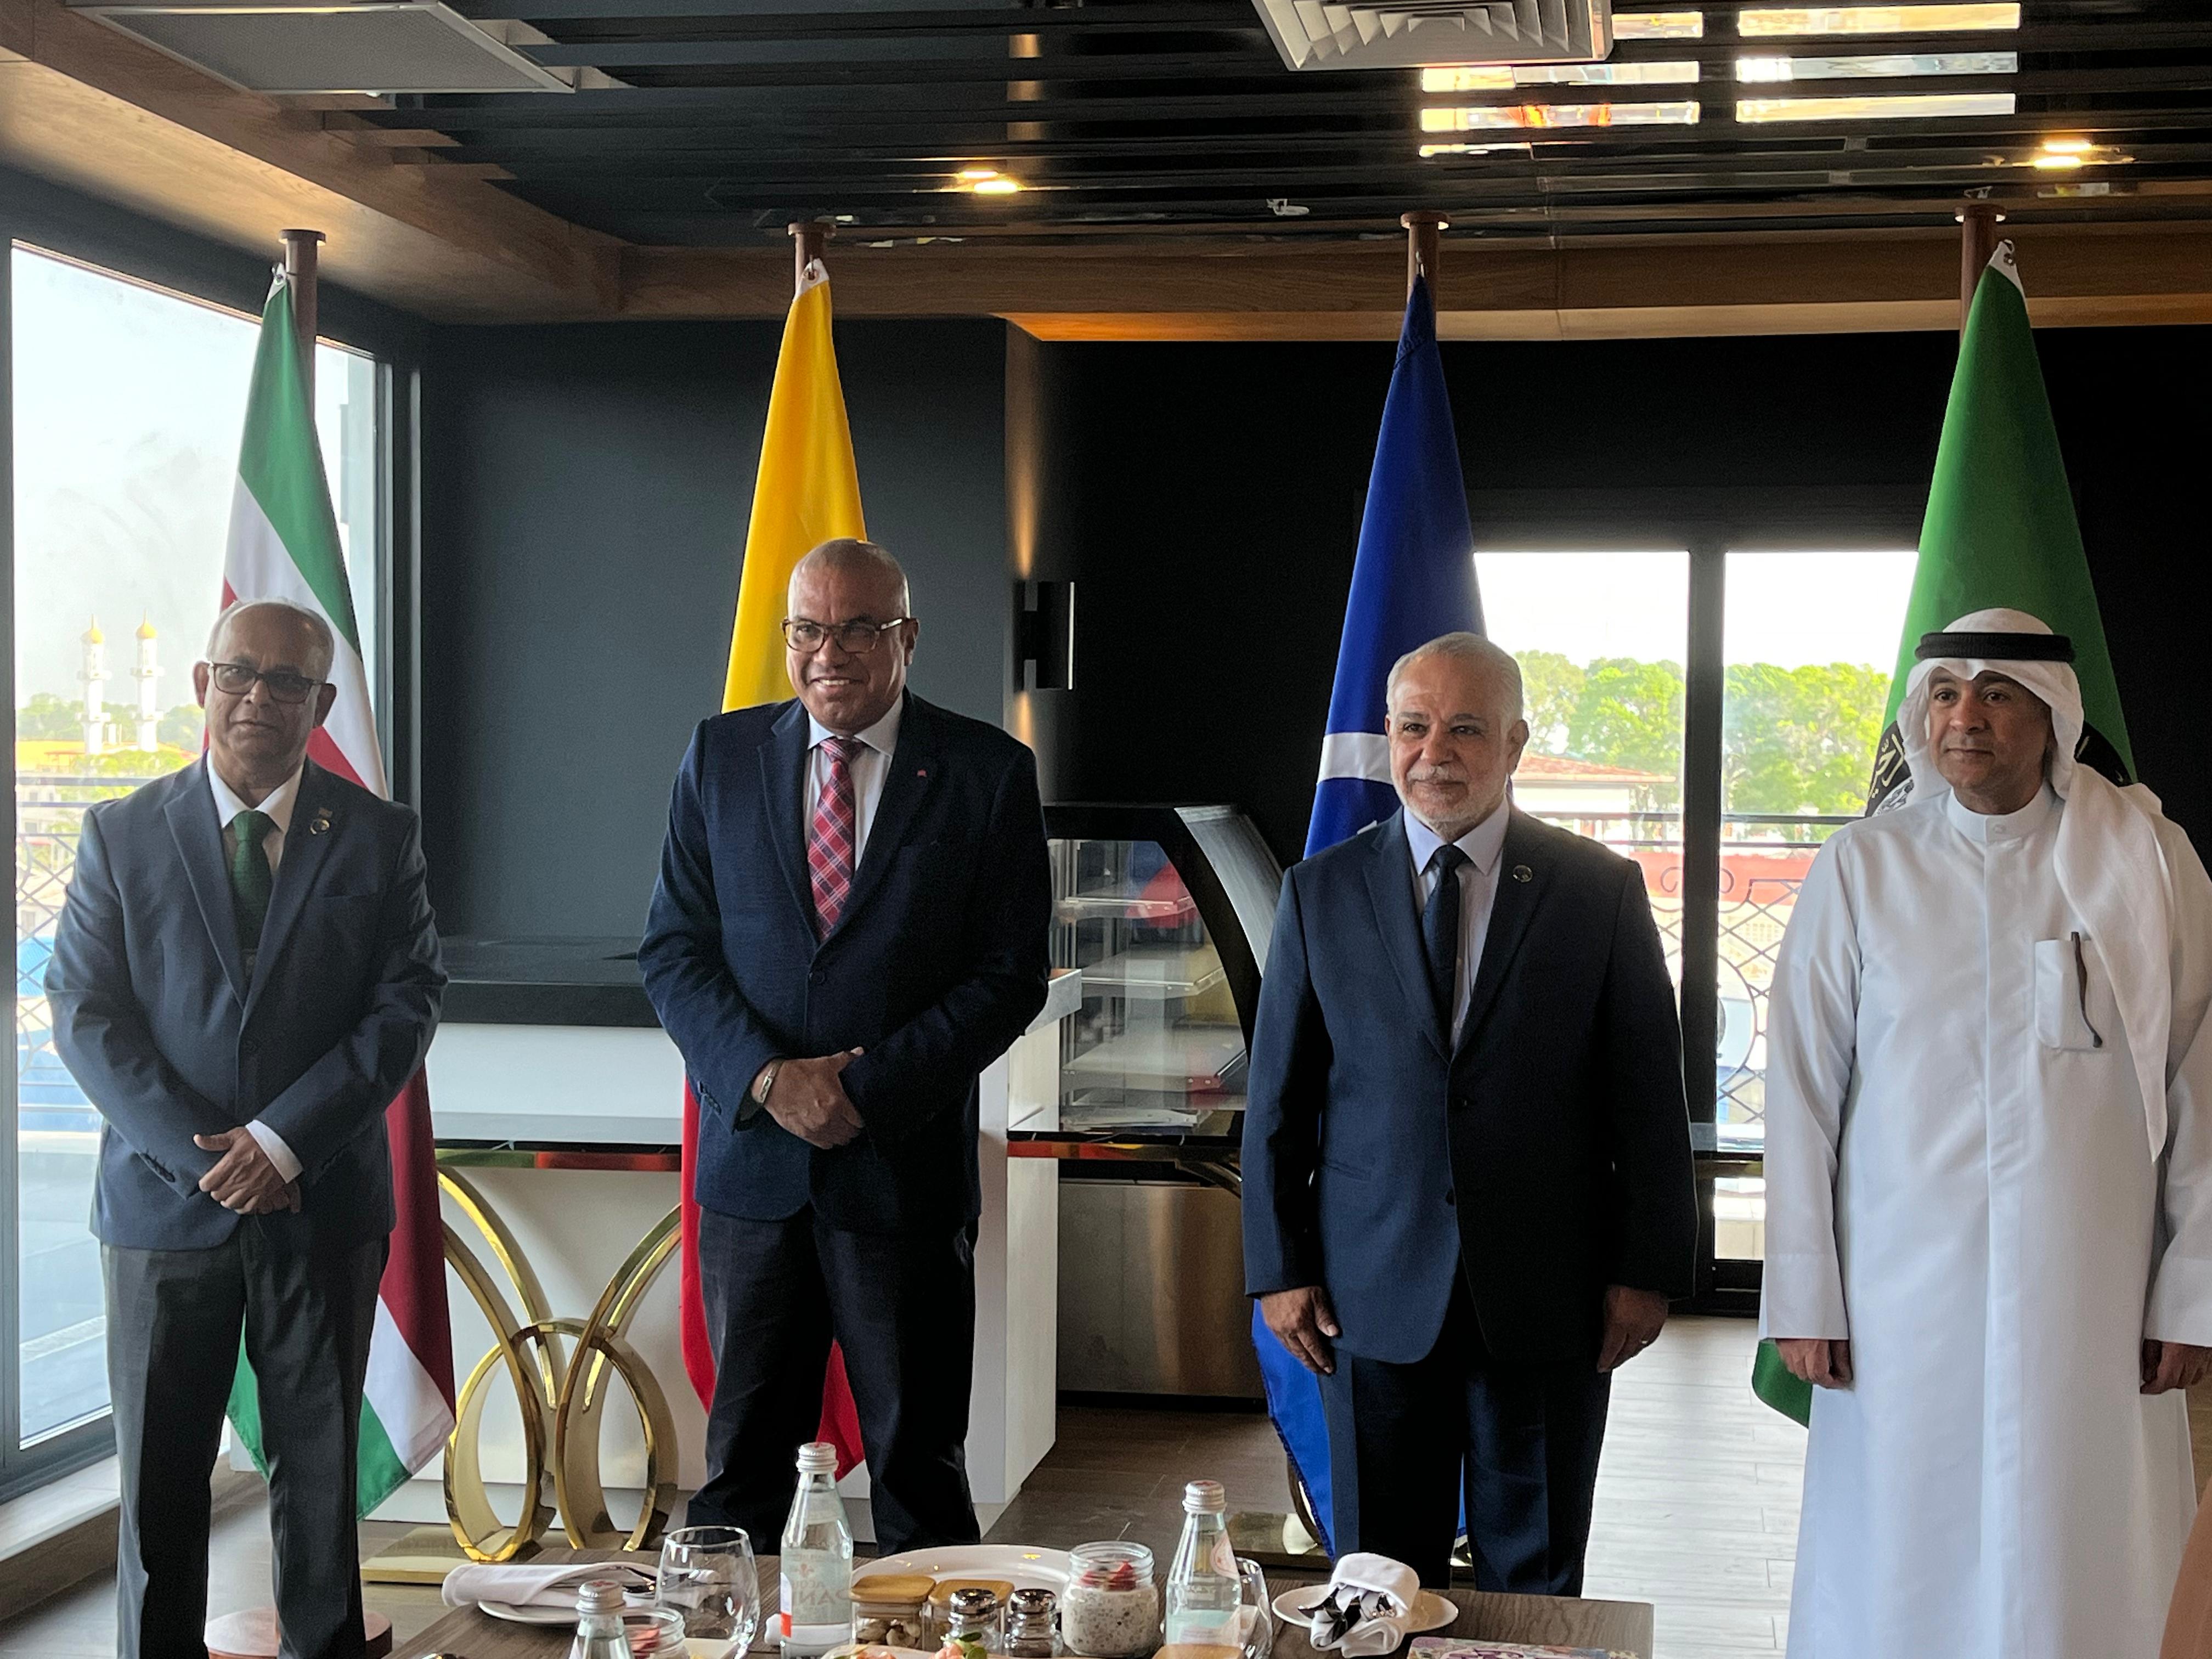 Profundizar los lazos de cooperación entre el Consejo de Cooperación del Golfo y la Asociación de Estados del Caribe: firme propósito del canciller Luis Gilberto Murillo